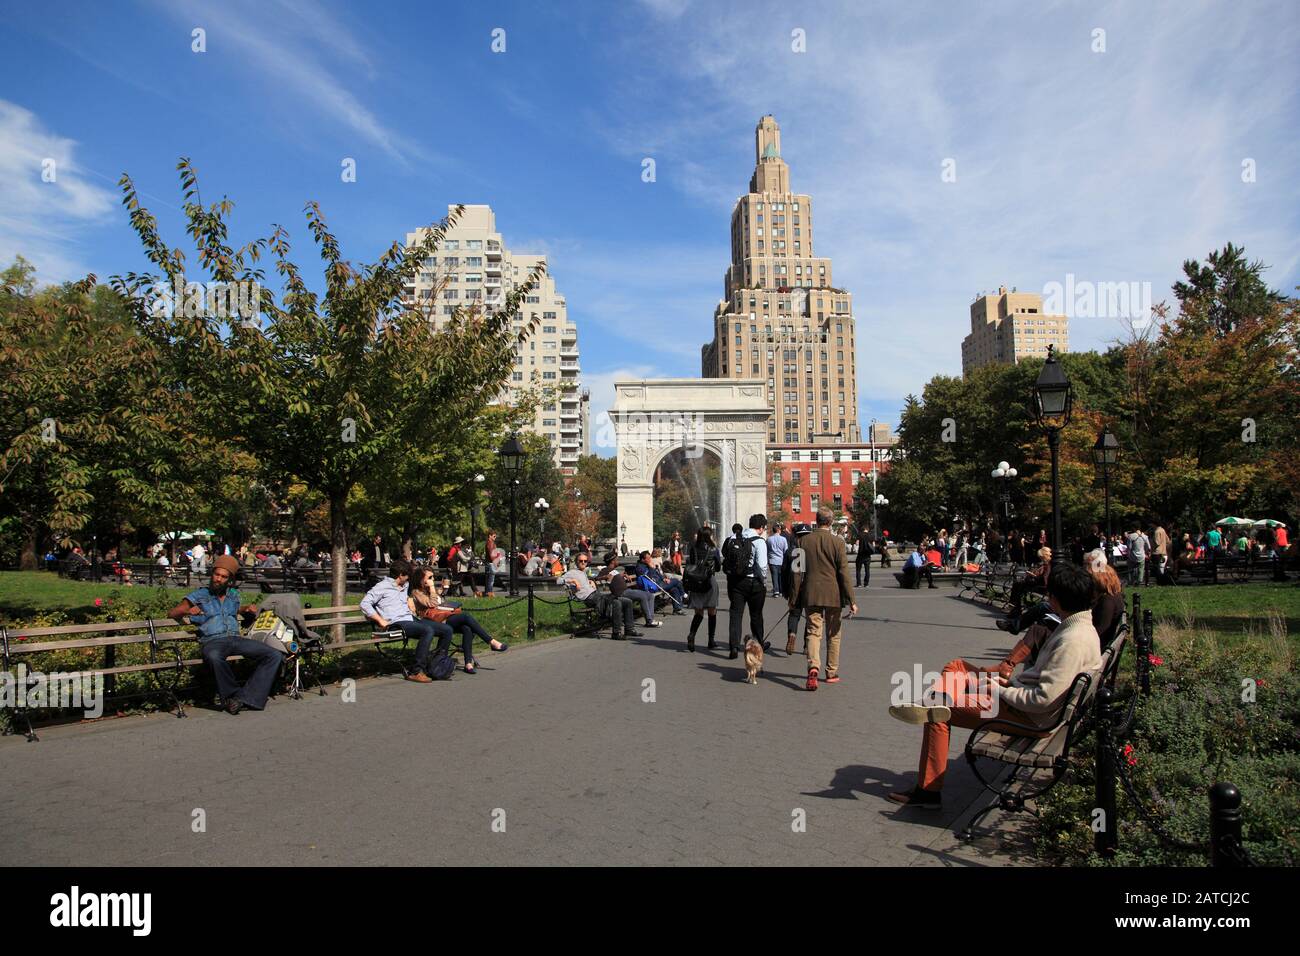 Washington Square Park, Washington Square Arch, Greenwich Village, Manhattan, New York City, États-Unis Banque D'Images